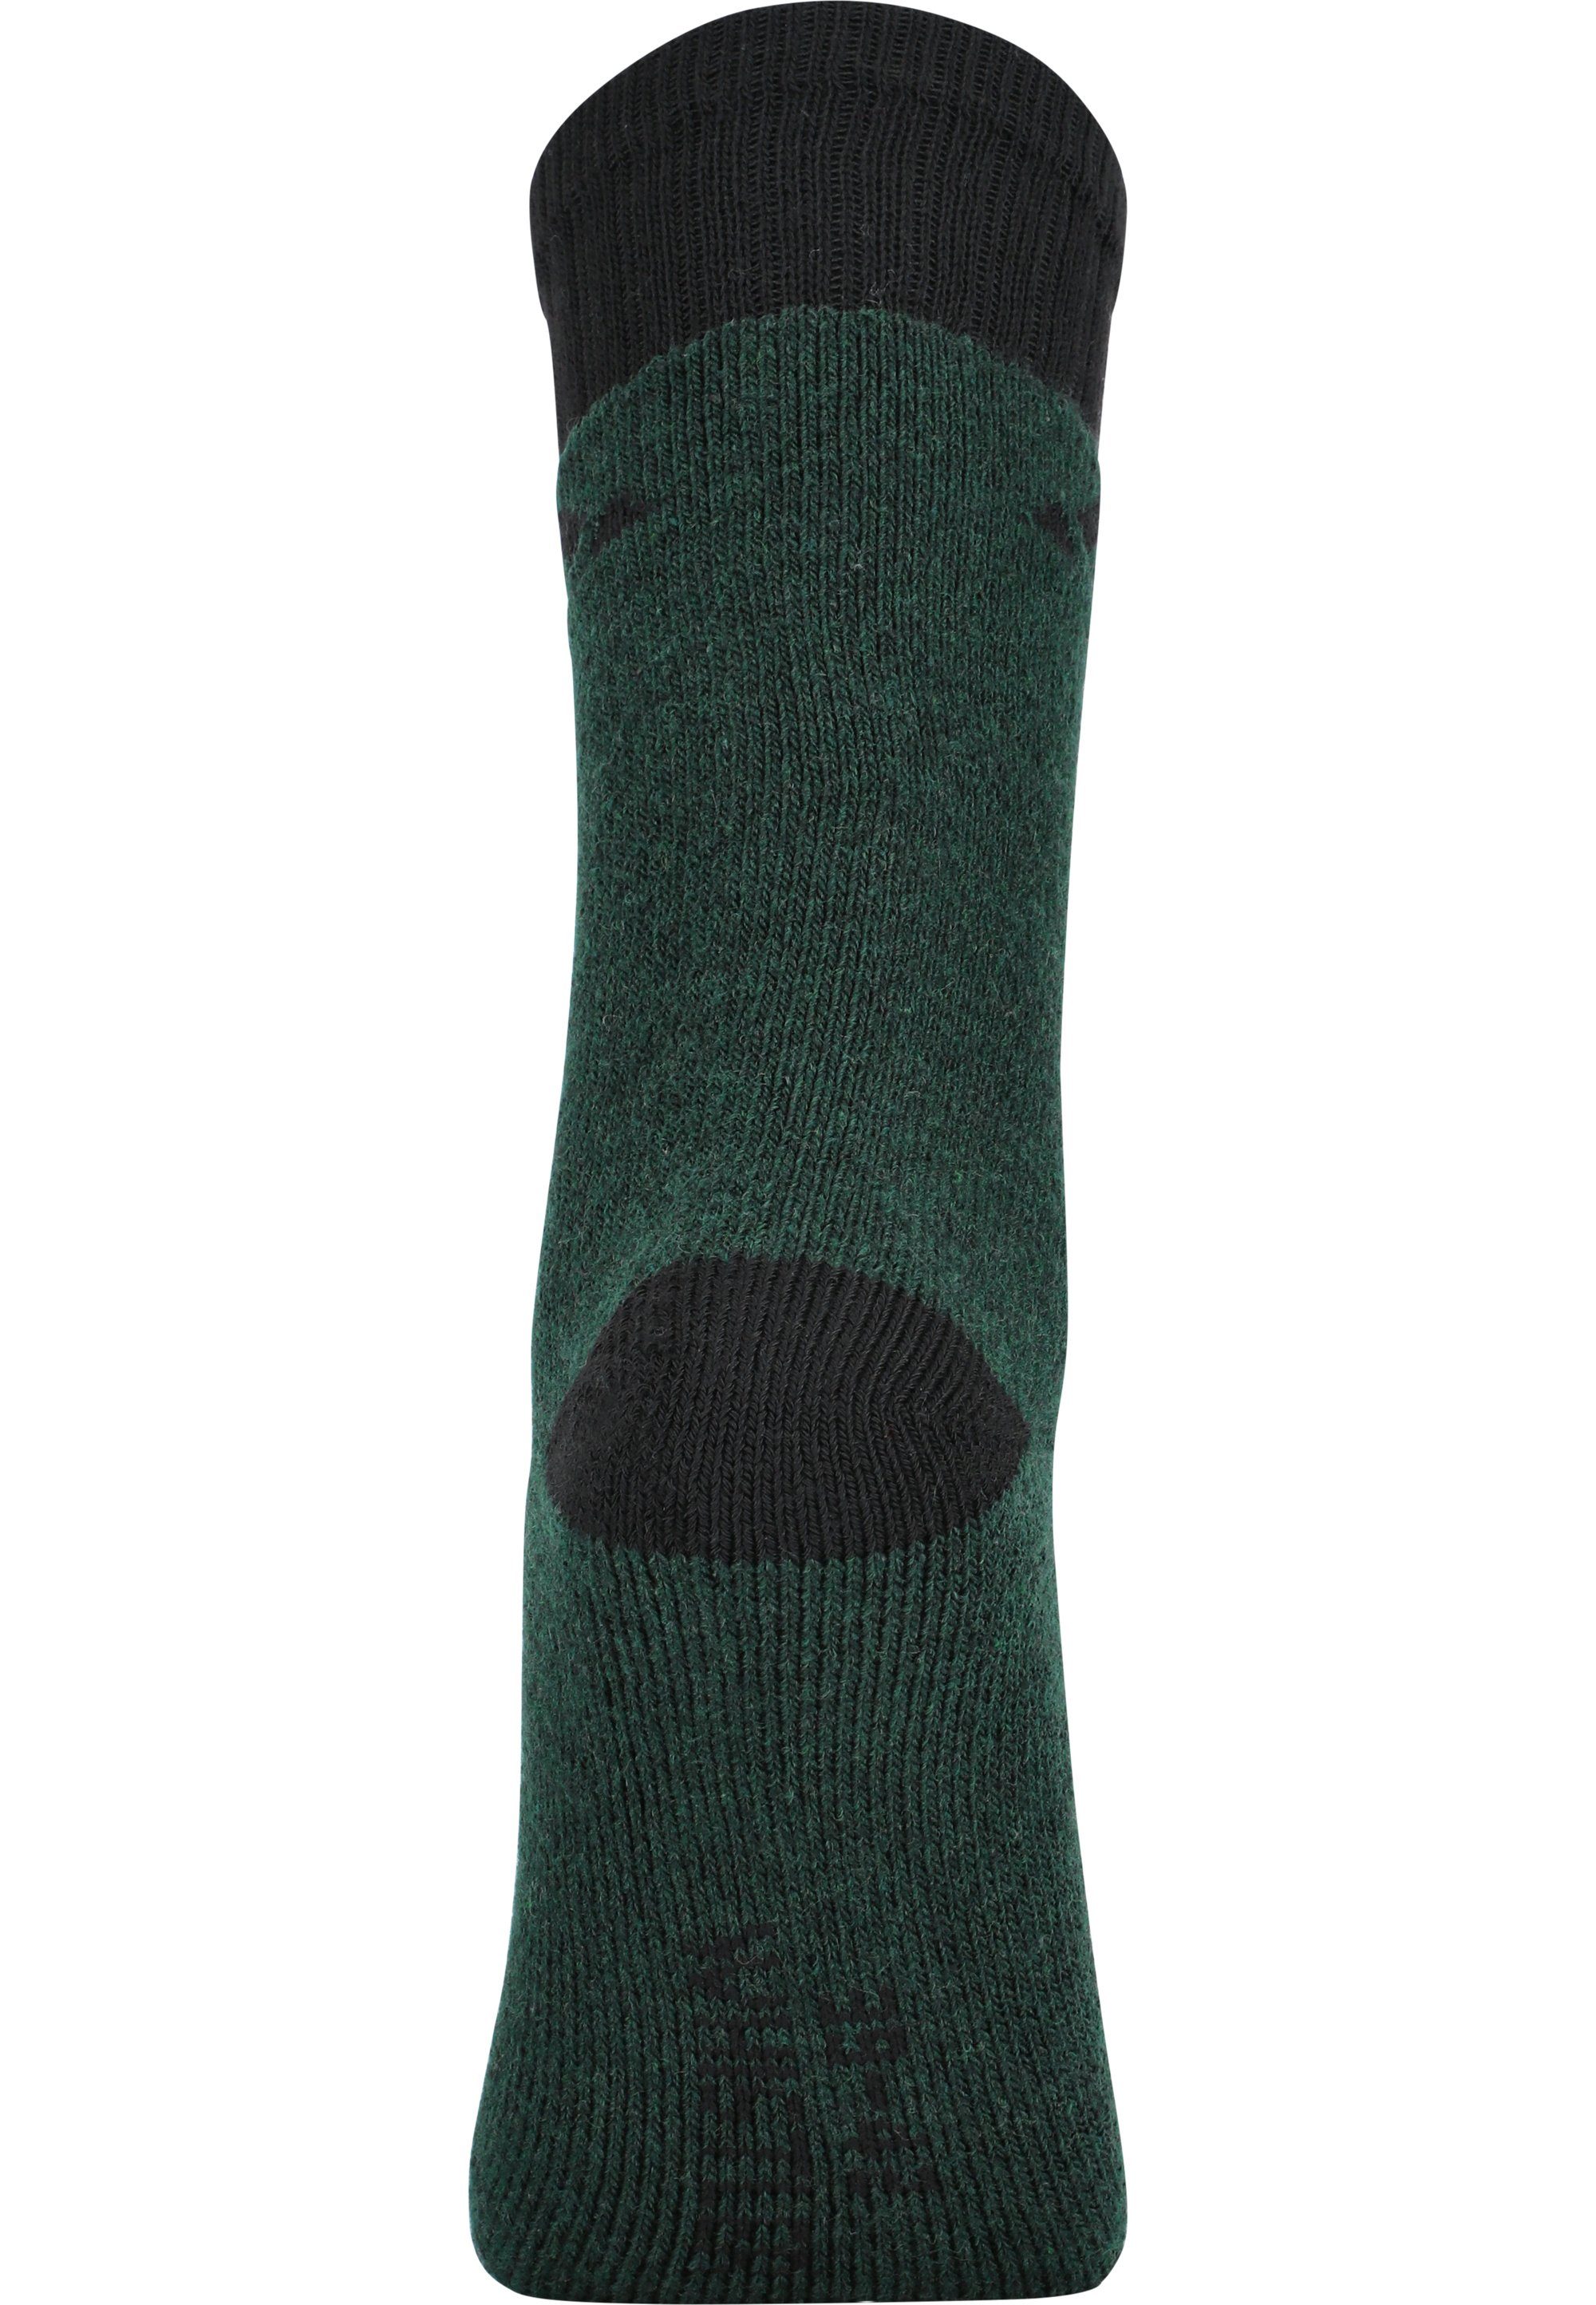 Waverlou grün Socken WHISTLER mit atmungsaktiver Funktion